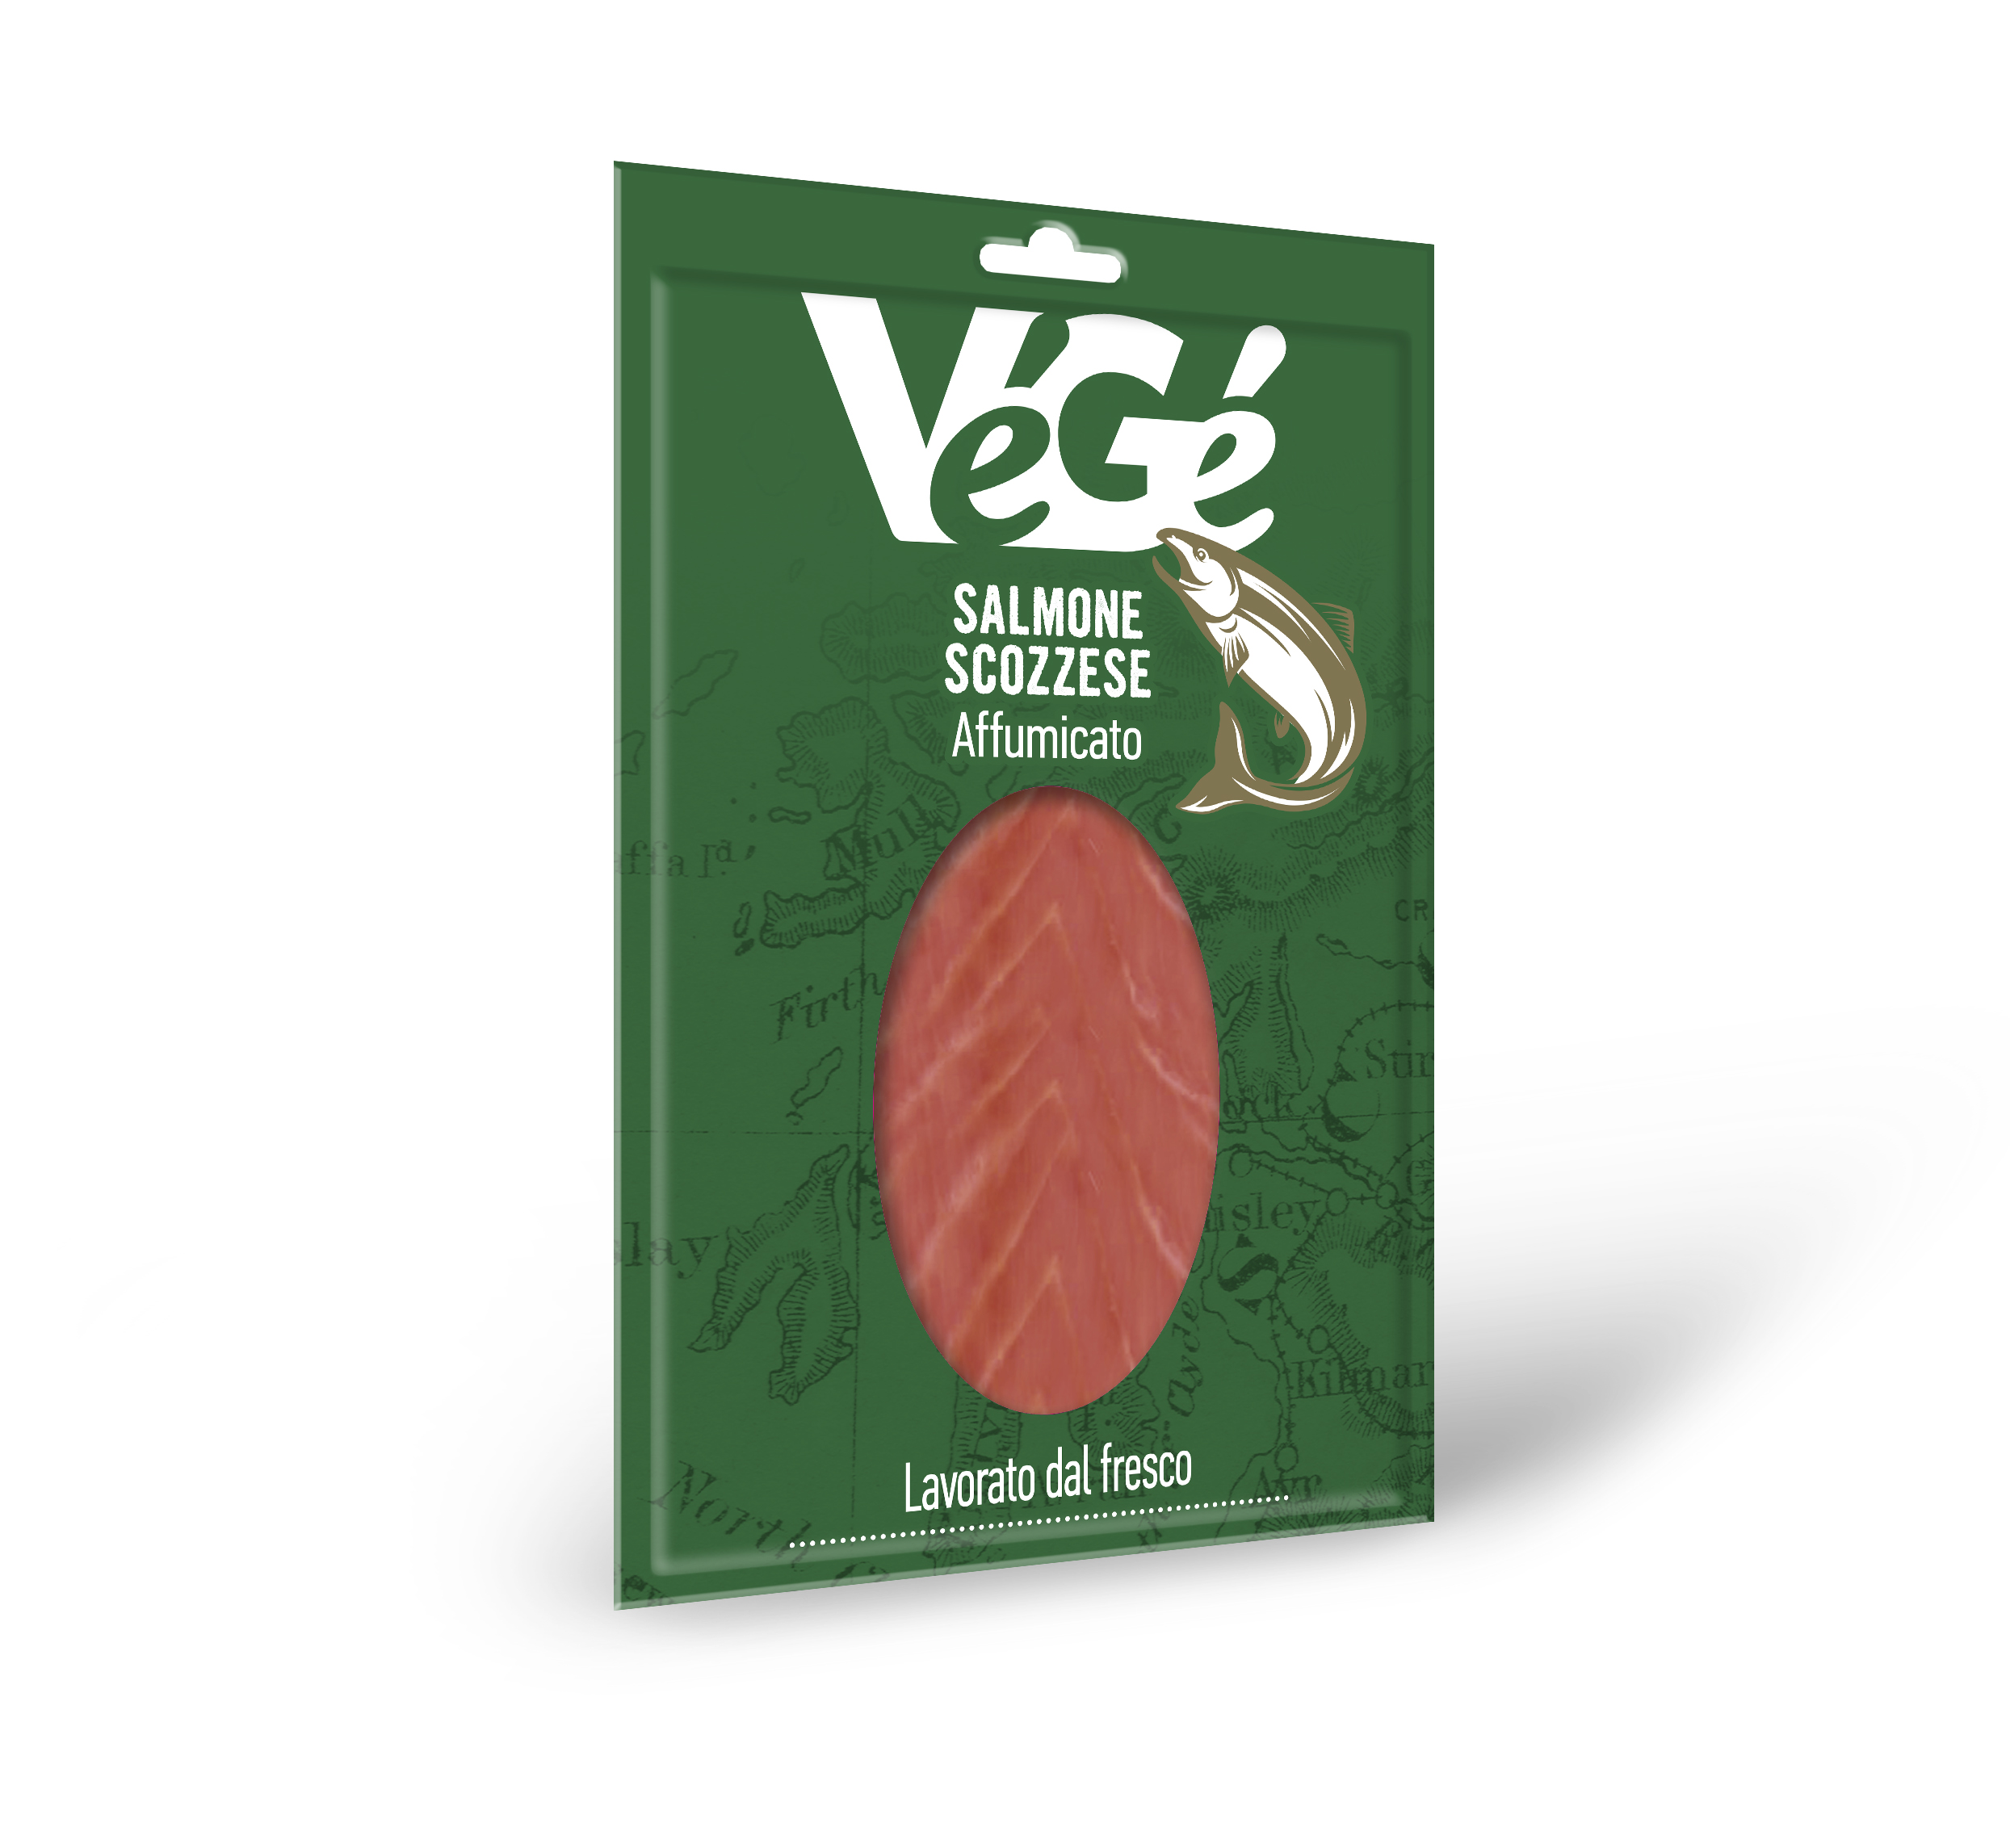 Salmone scozzese affumicato Vegé GDO (Grande Distribuzione Organizzata)